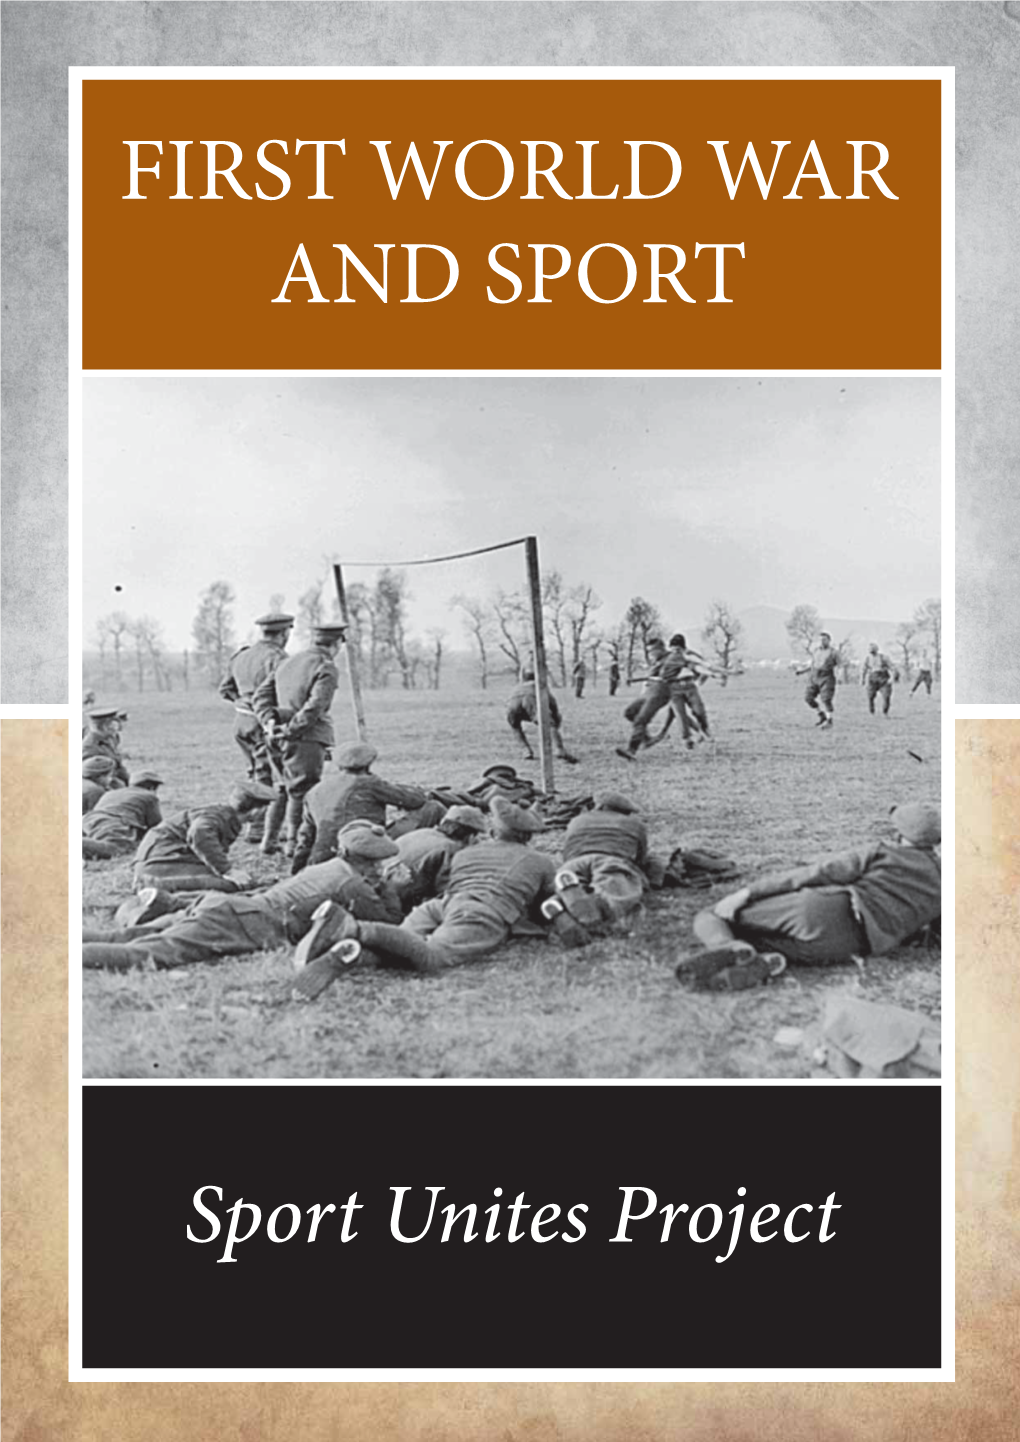 Sports Unite Project